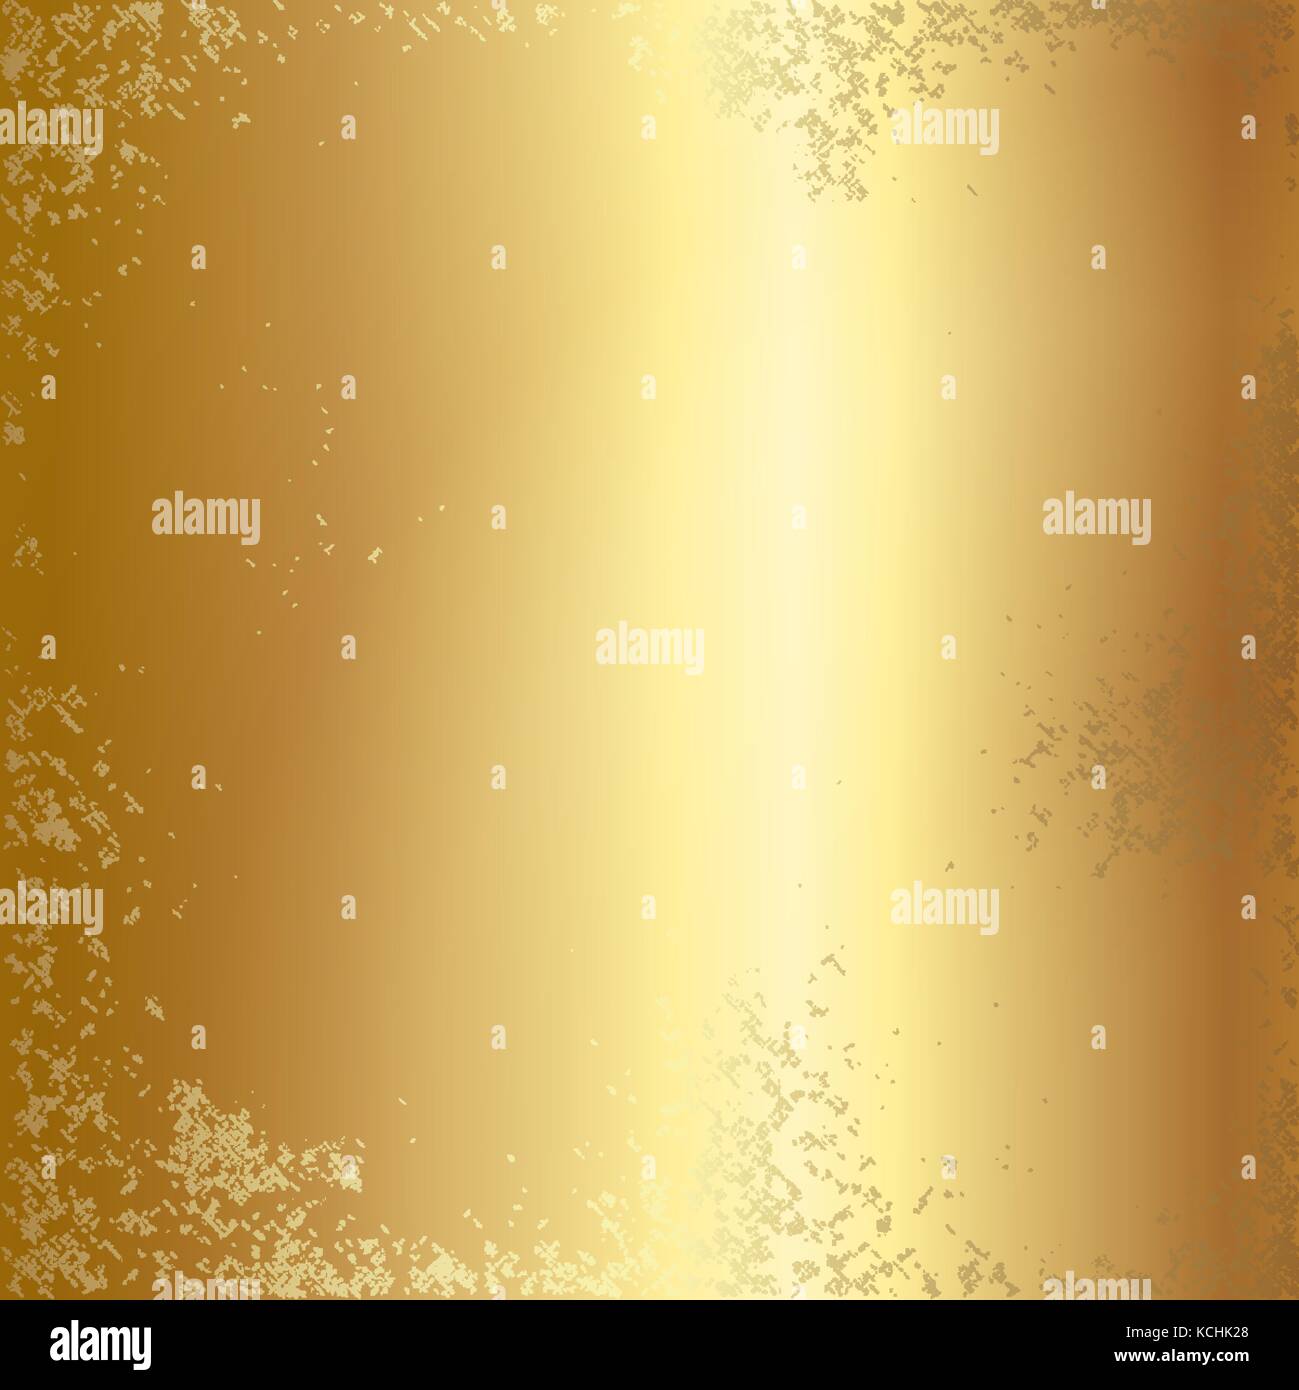 Goldfolie Textur Hintergrund. Stock Vektor